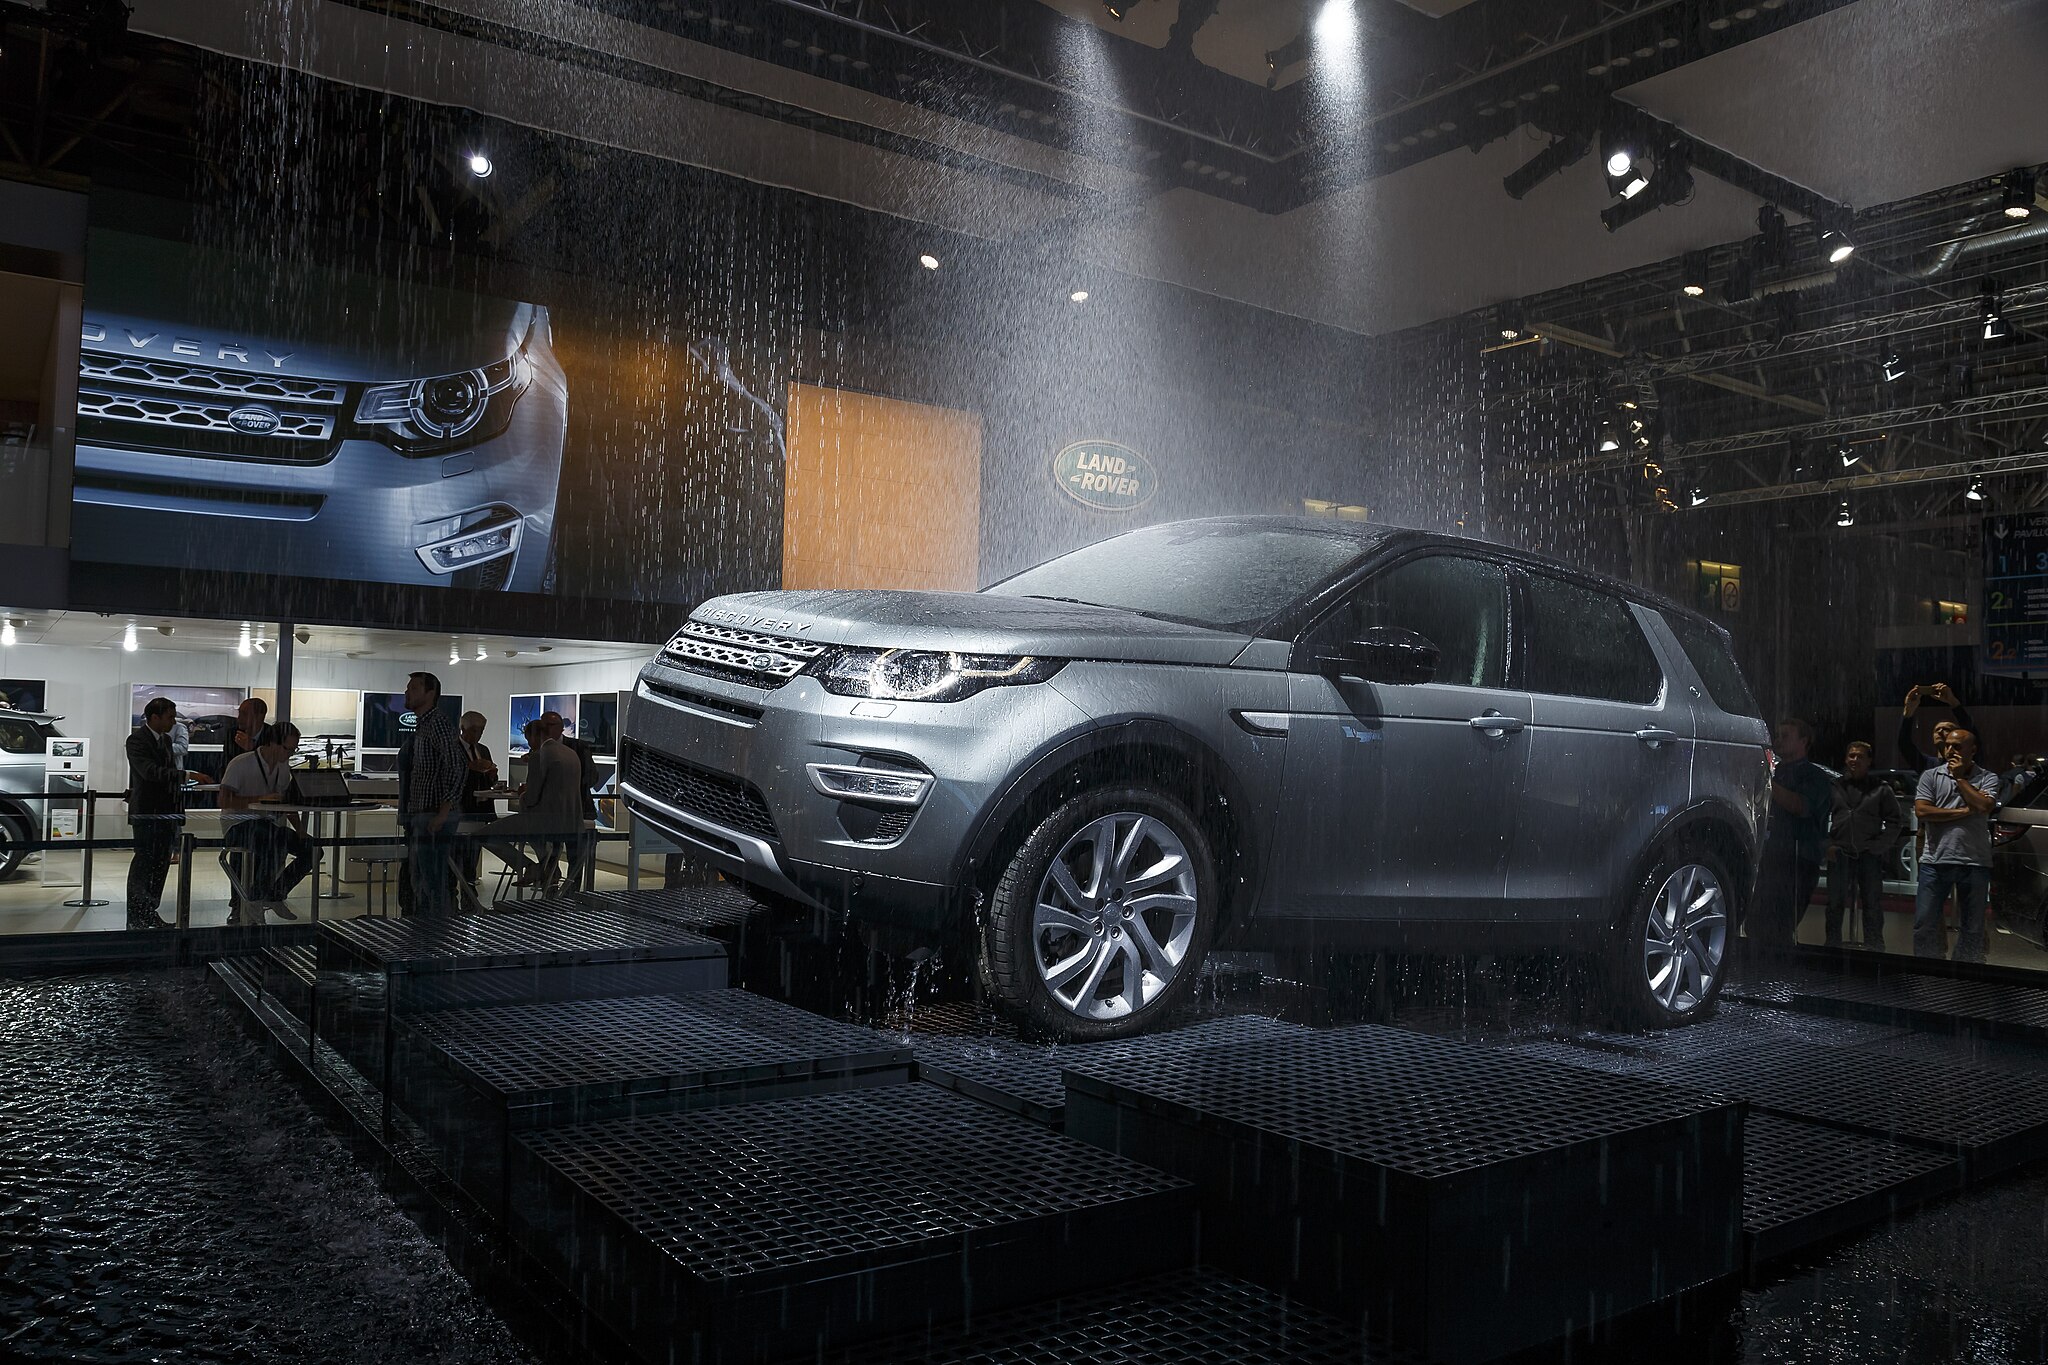 Conferencia de prensa de Jaguar Land Rover en el Salón del Automóvil de París en el año 2014. Foto: Land Rover MENA/ CC BY 2.0, via Wikimedia Commons.